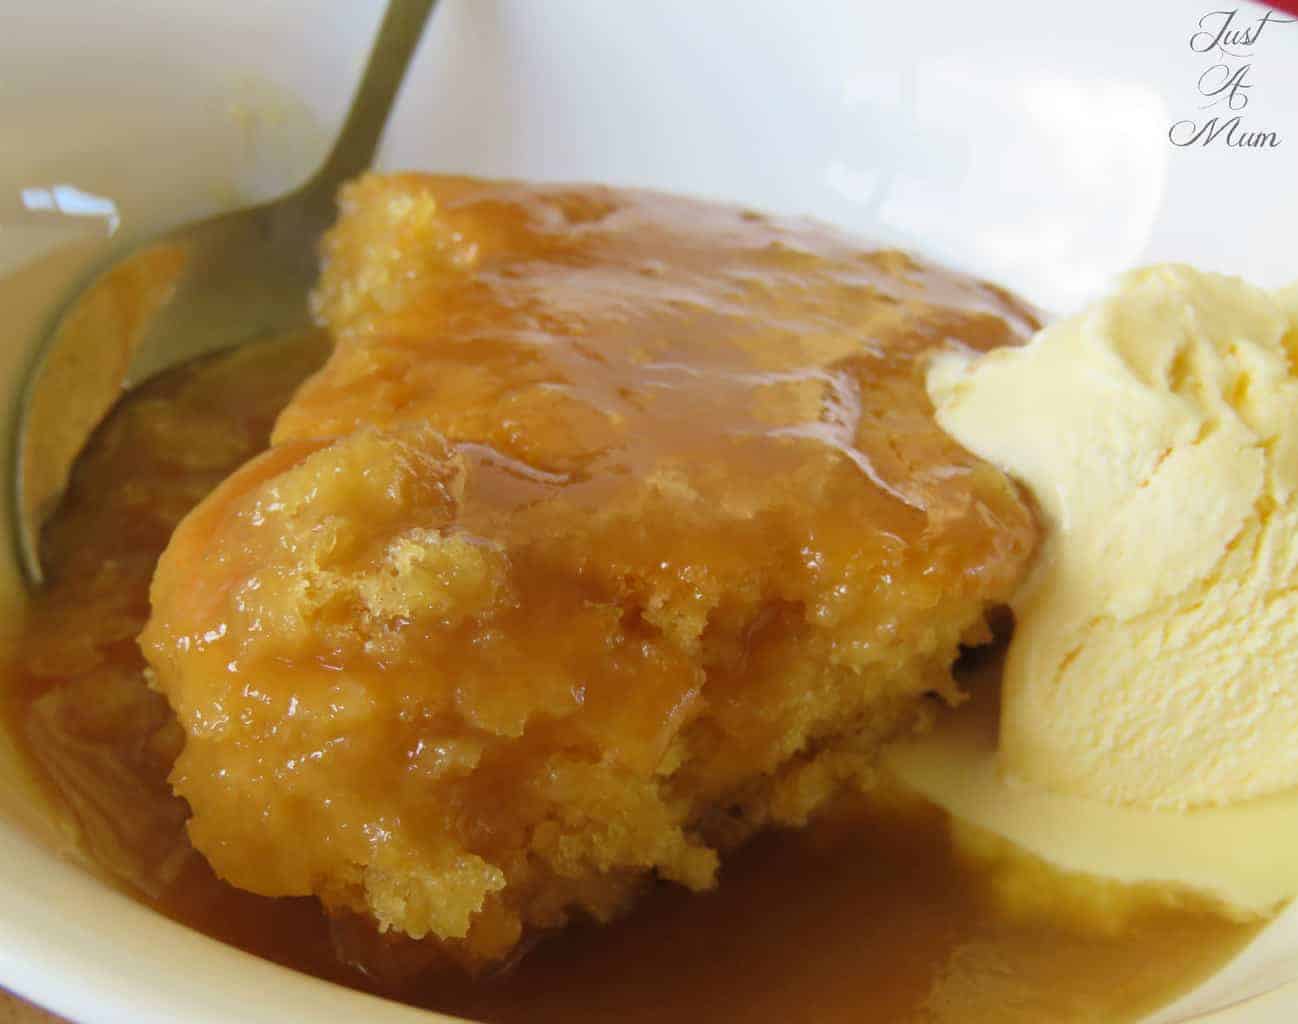 Just A Mum's Butterscotch Self-Saucing Pudding